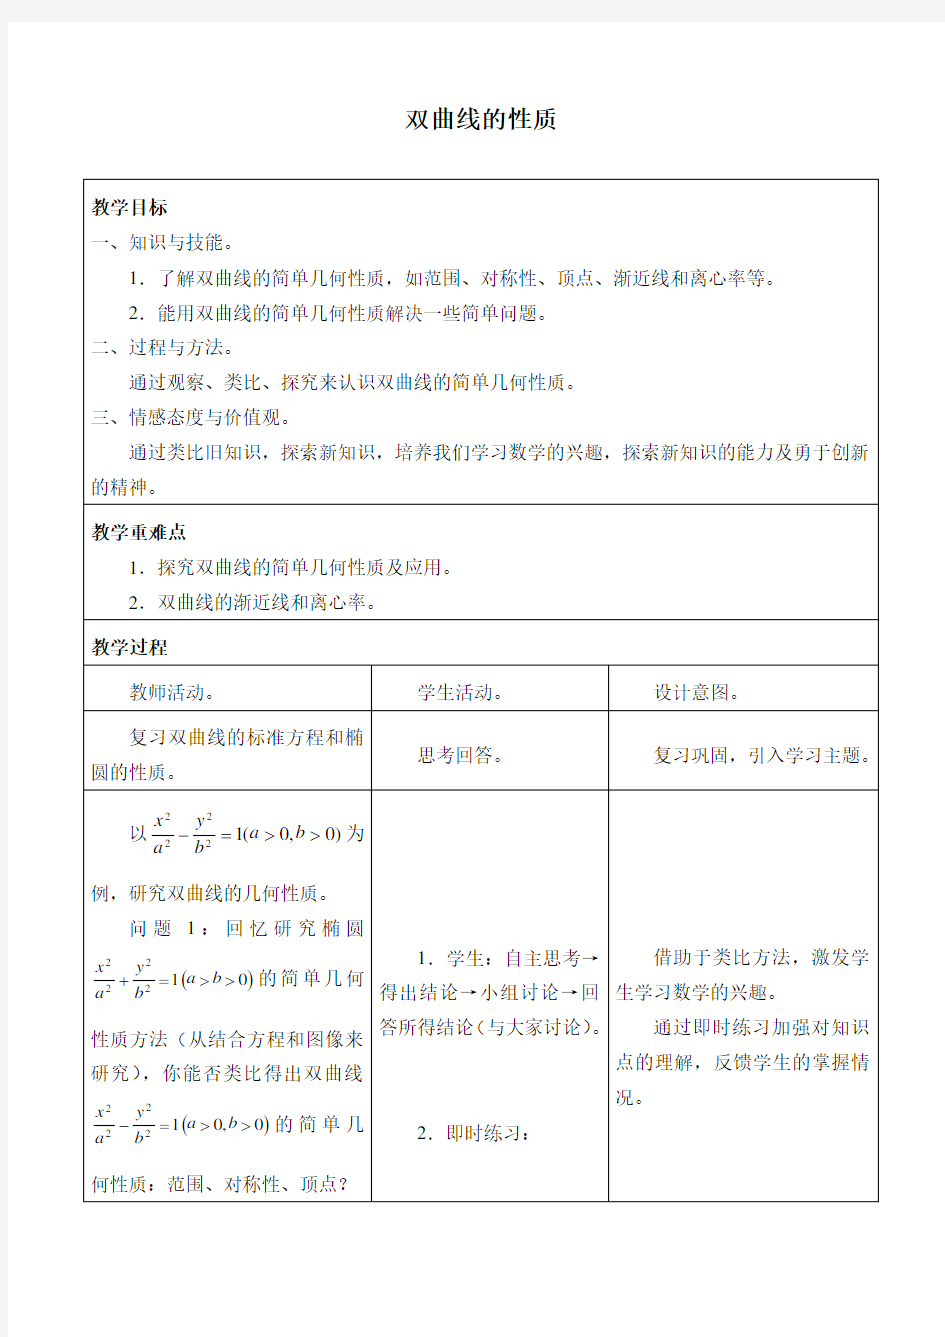 沪教版(上海)高二数学第二学期-12.6 双曲线的性质-教案